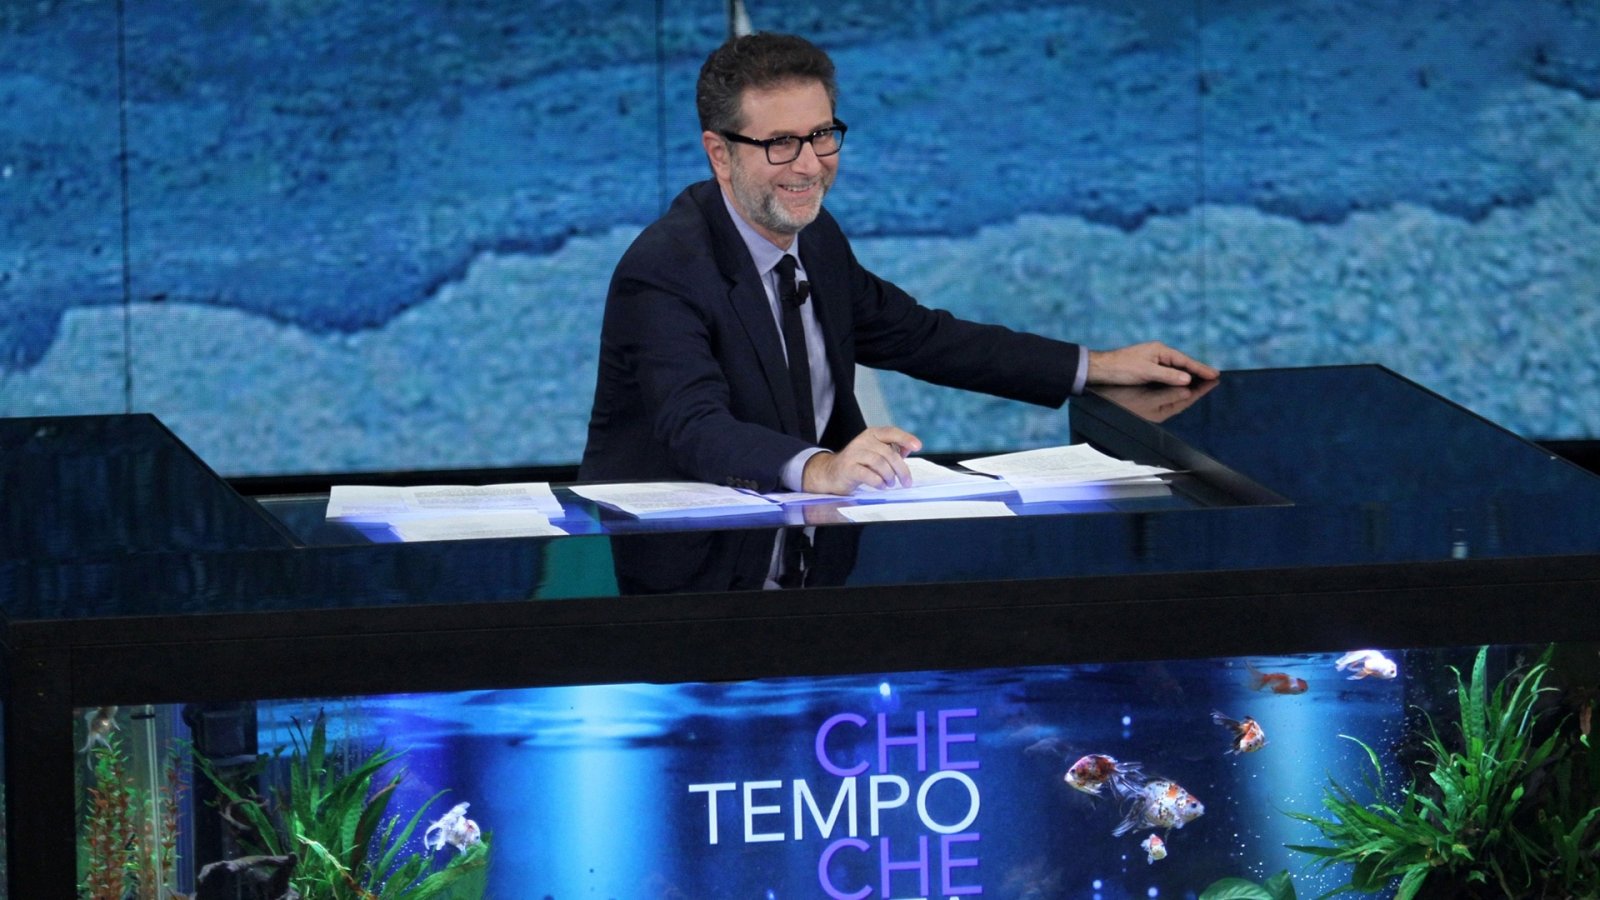 Che Tempo che Fa: Amadeus, Gianni Morandi e Alessia Marcuzzi, stasera ospiti di Fabio Fazio su Rai 3